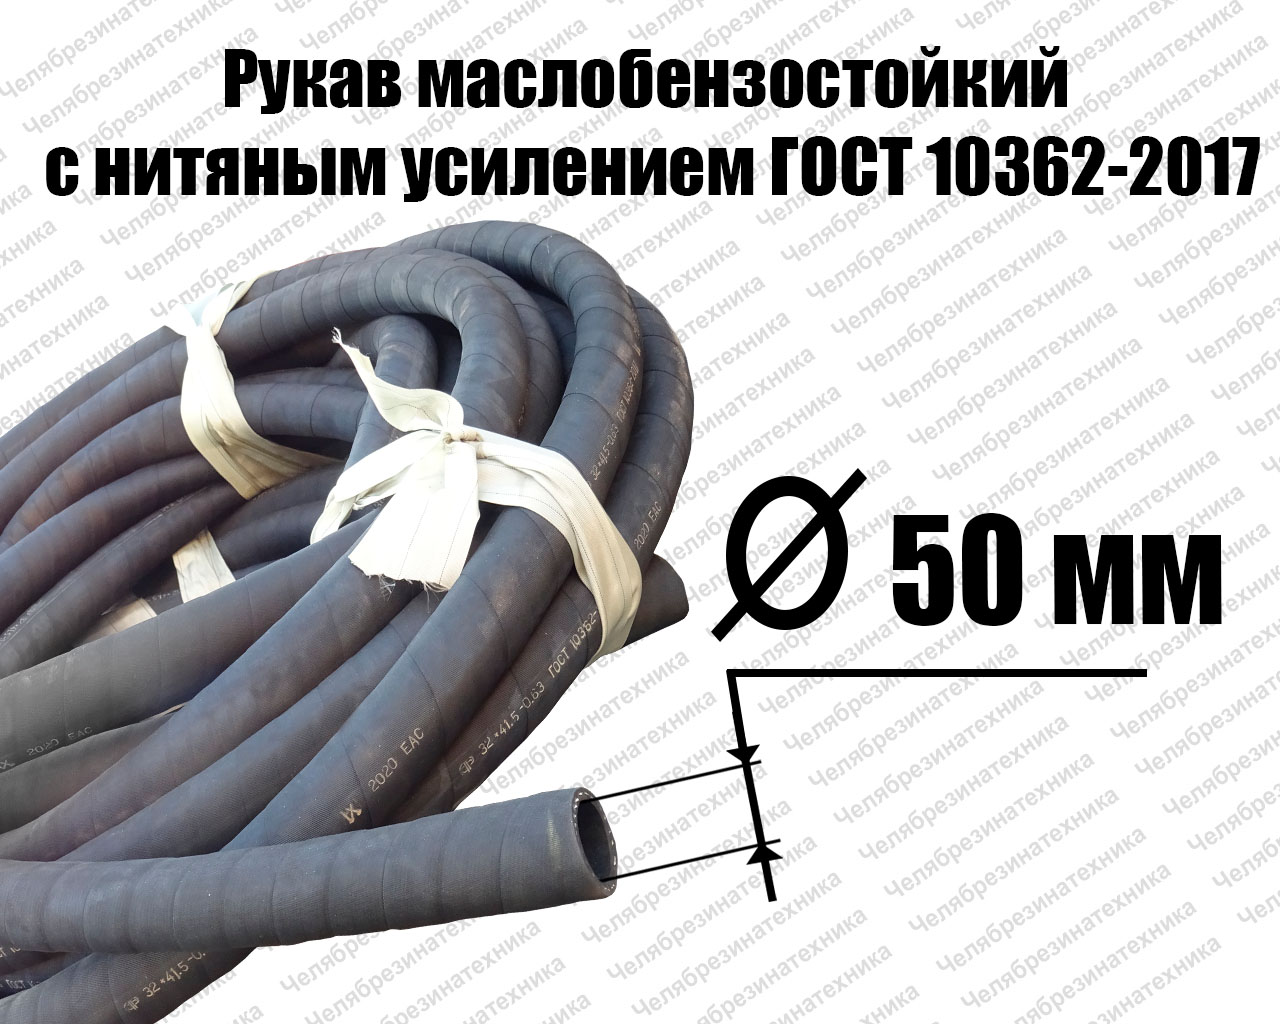 Рукав   50х60-0,63   ГОСТ 10362-2017 маслобензостойкий Саранск